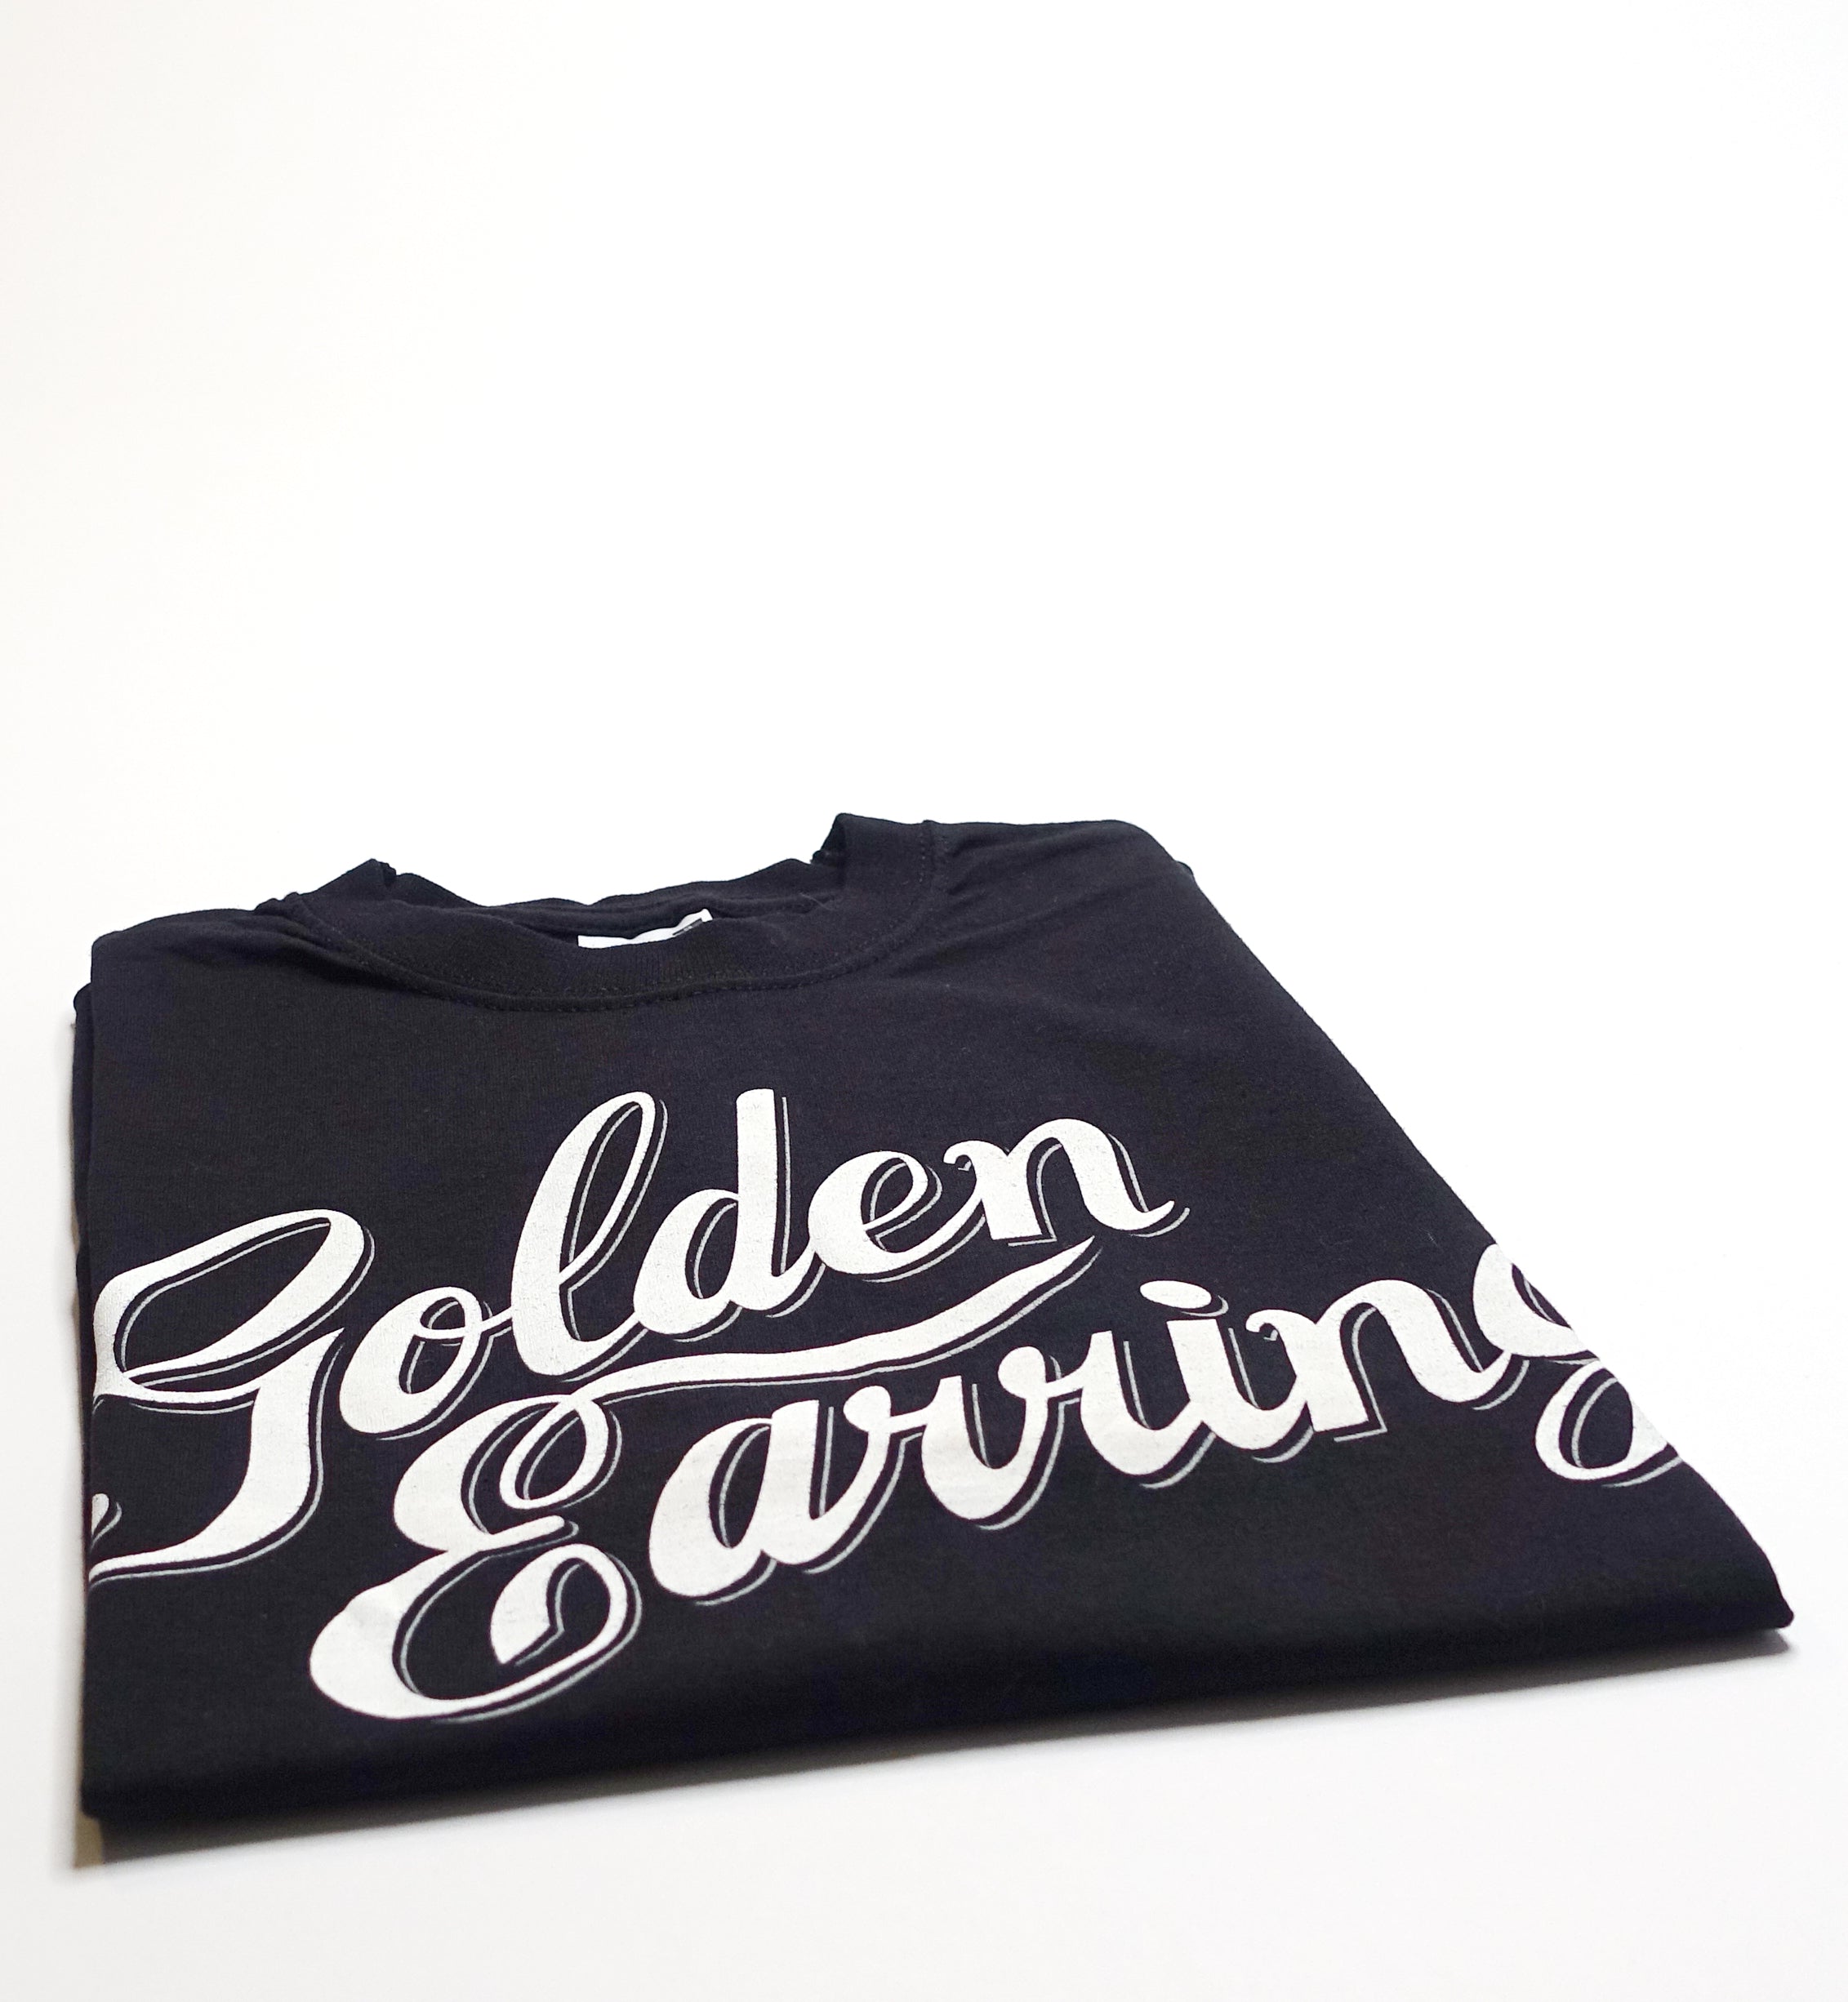 Golden Earring – Script Logo Tour Shirt Size Small